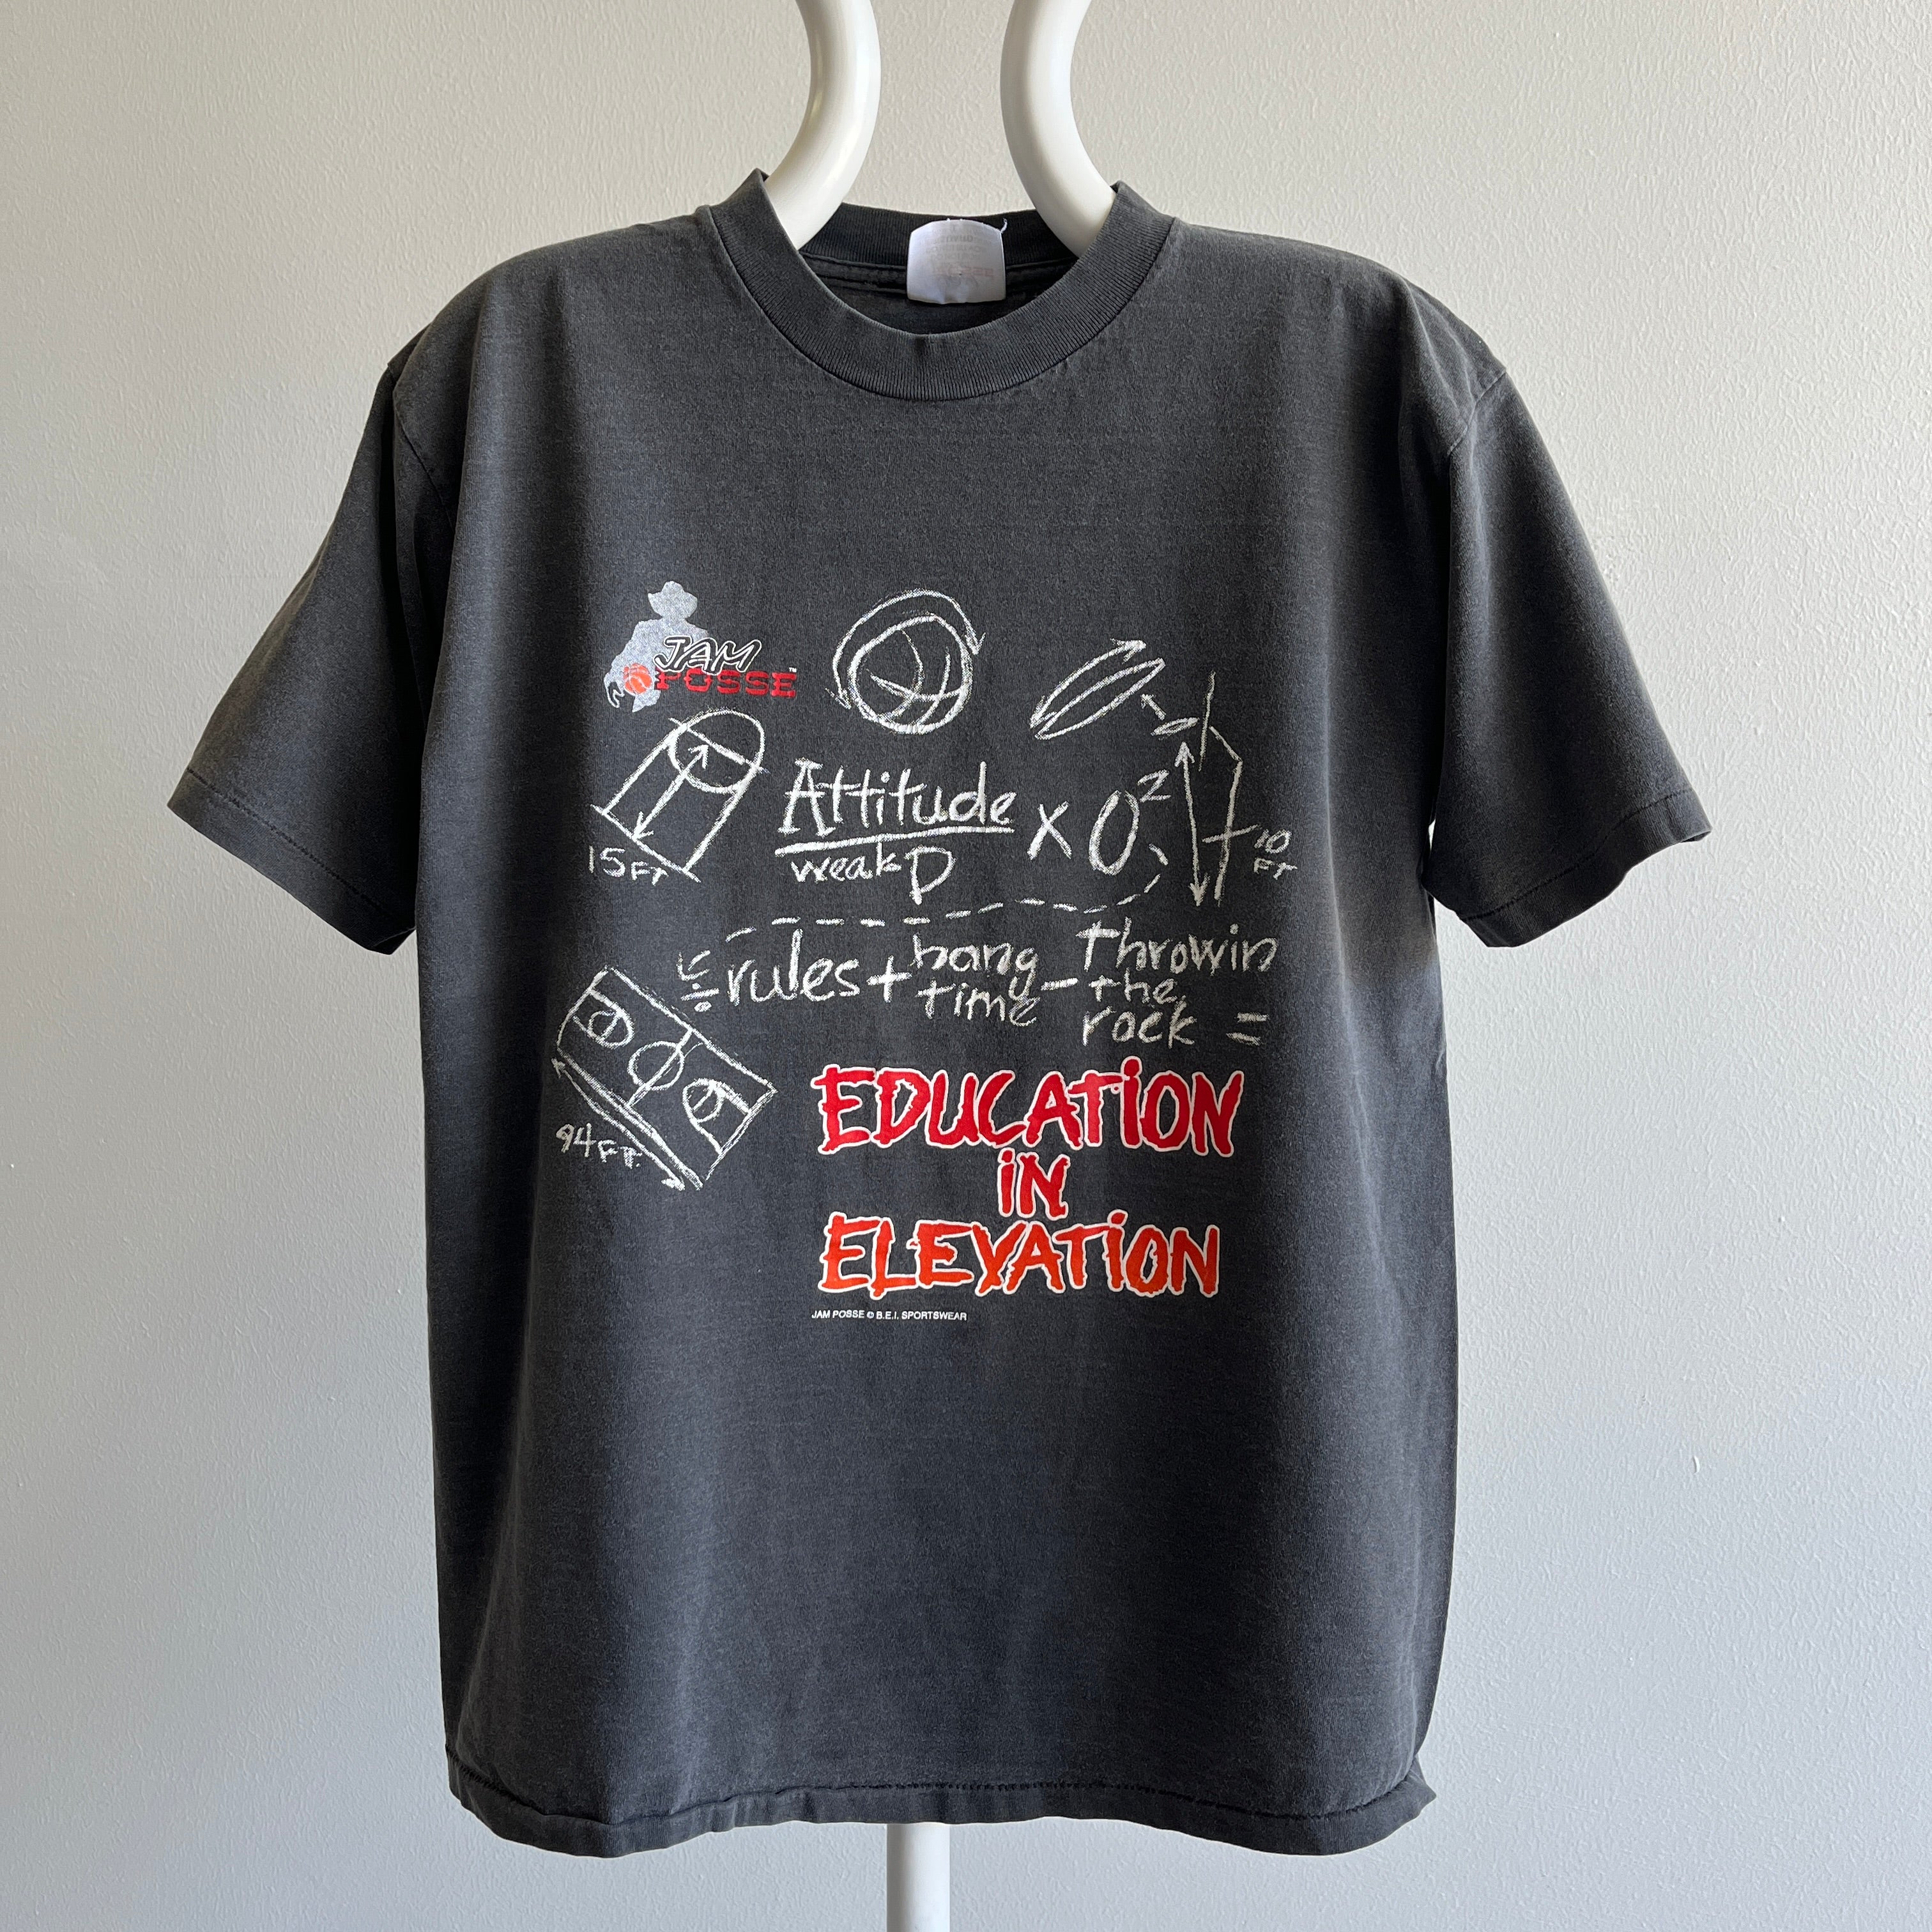 T-shirt Jam Posse Education en élévation des années 1990